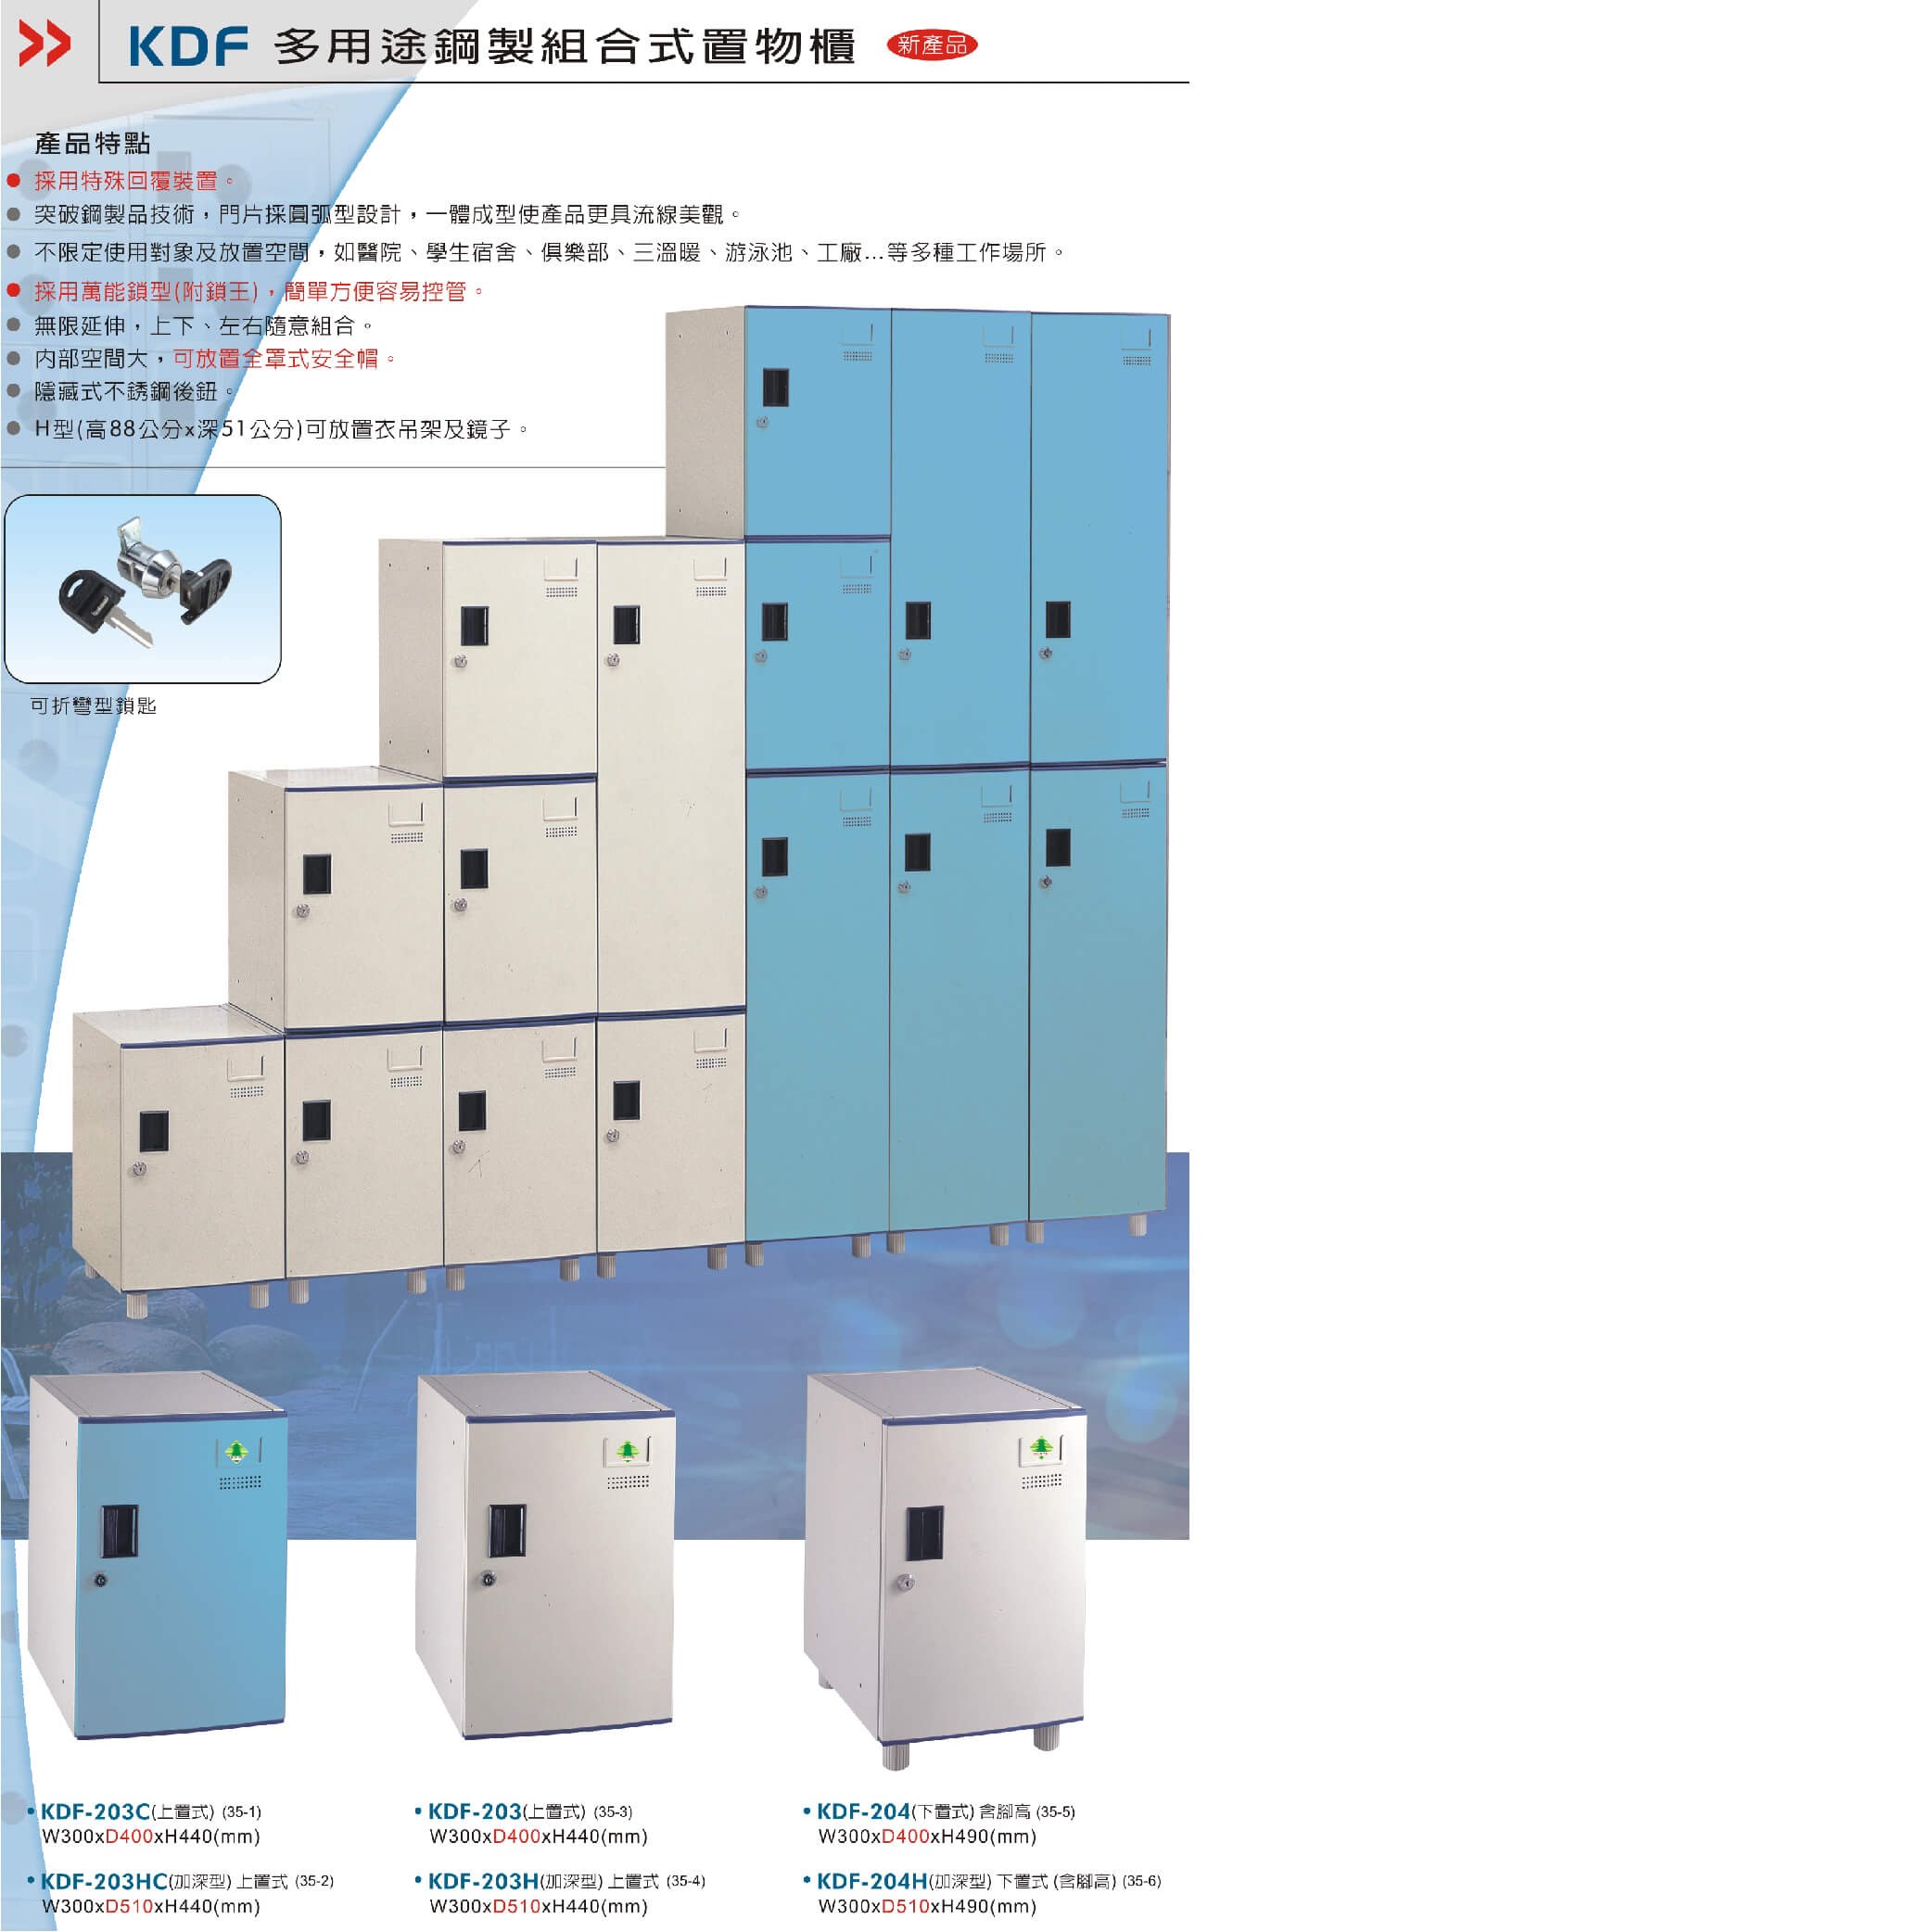 鑰匙櫃】大富KDF-208FB 多用途鋼製組合式置物櫃～可換購密碼鎖收納櫃更衣櫃衣櫃鞋櫃存放員工宿舍| 必購網直營店|